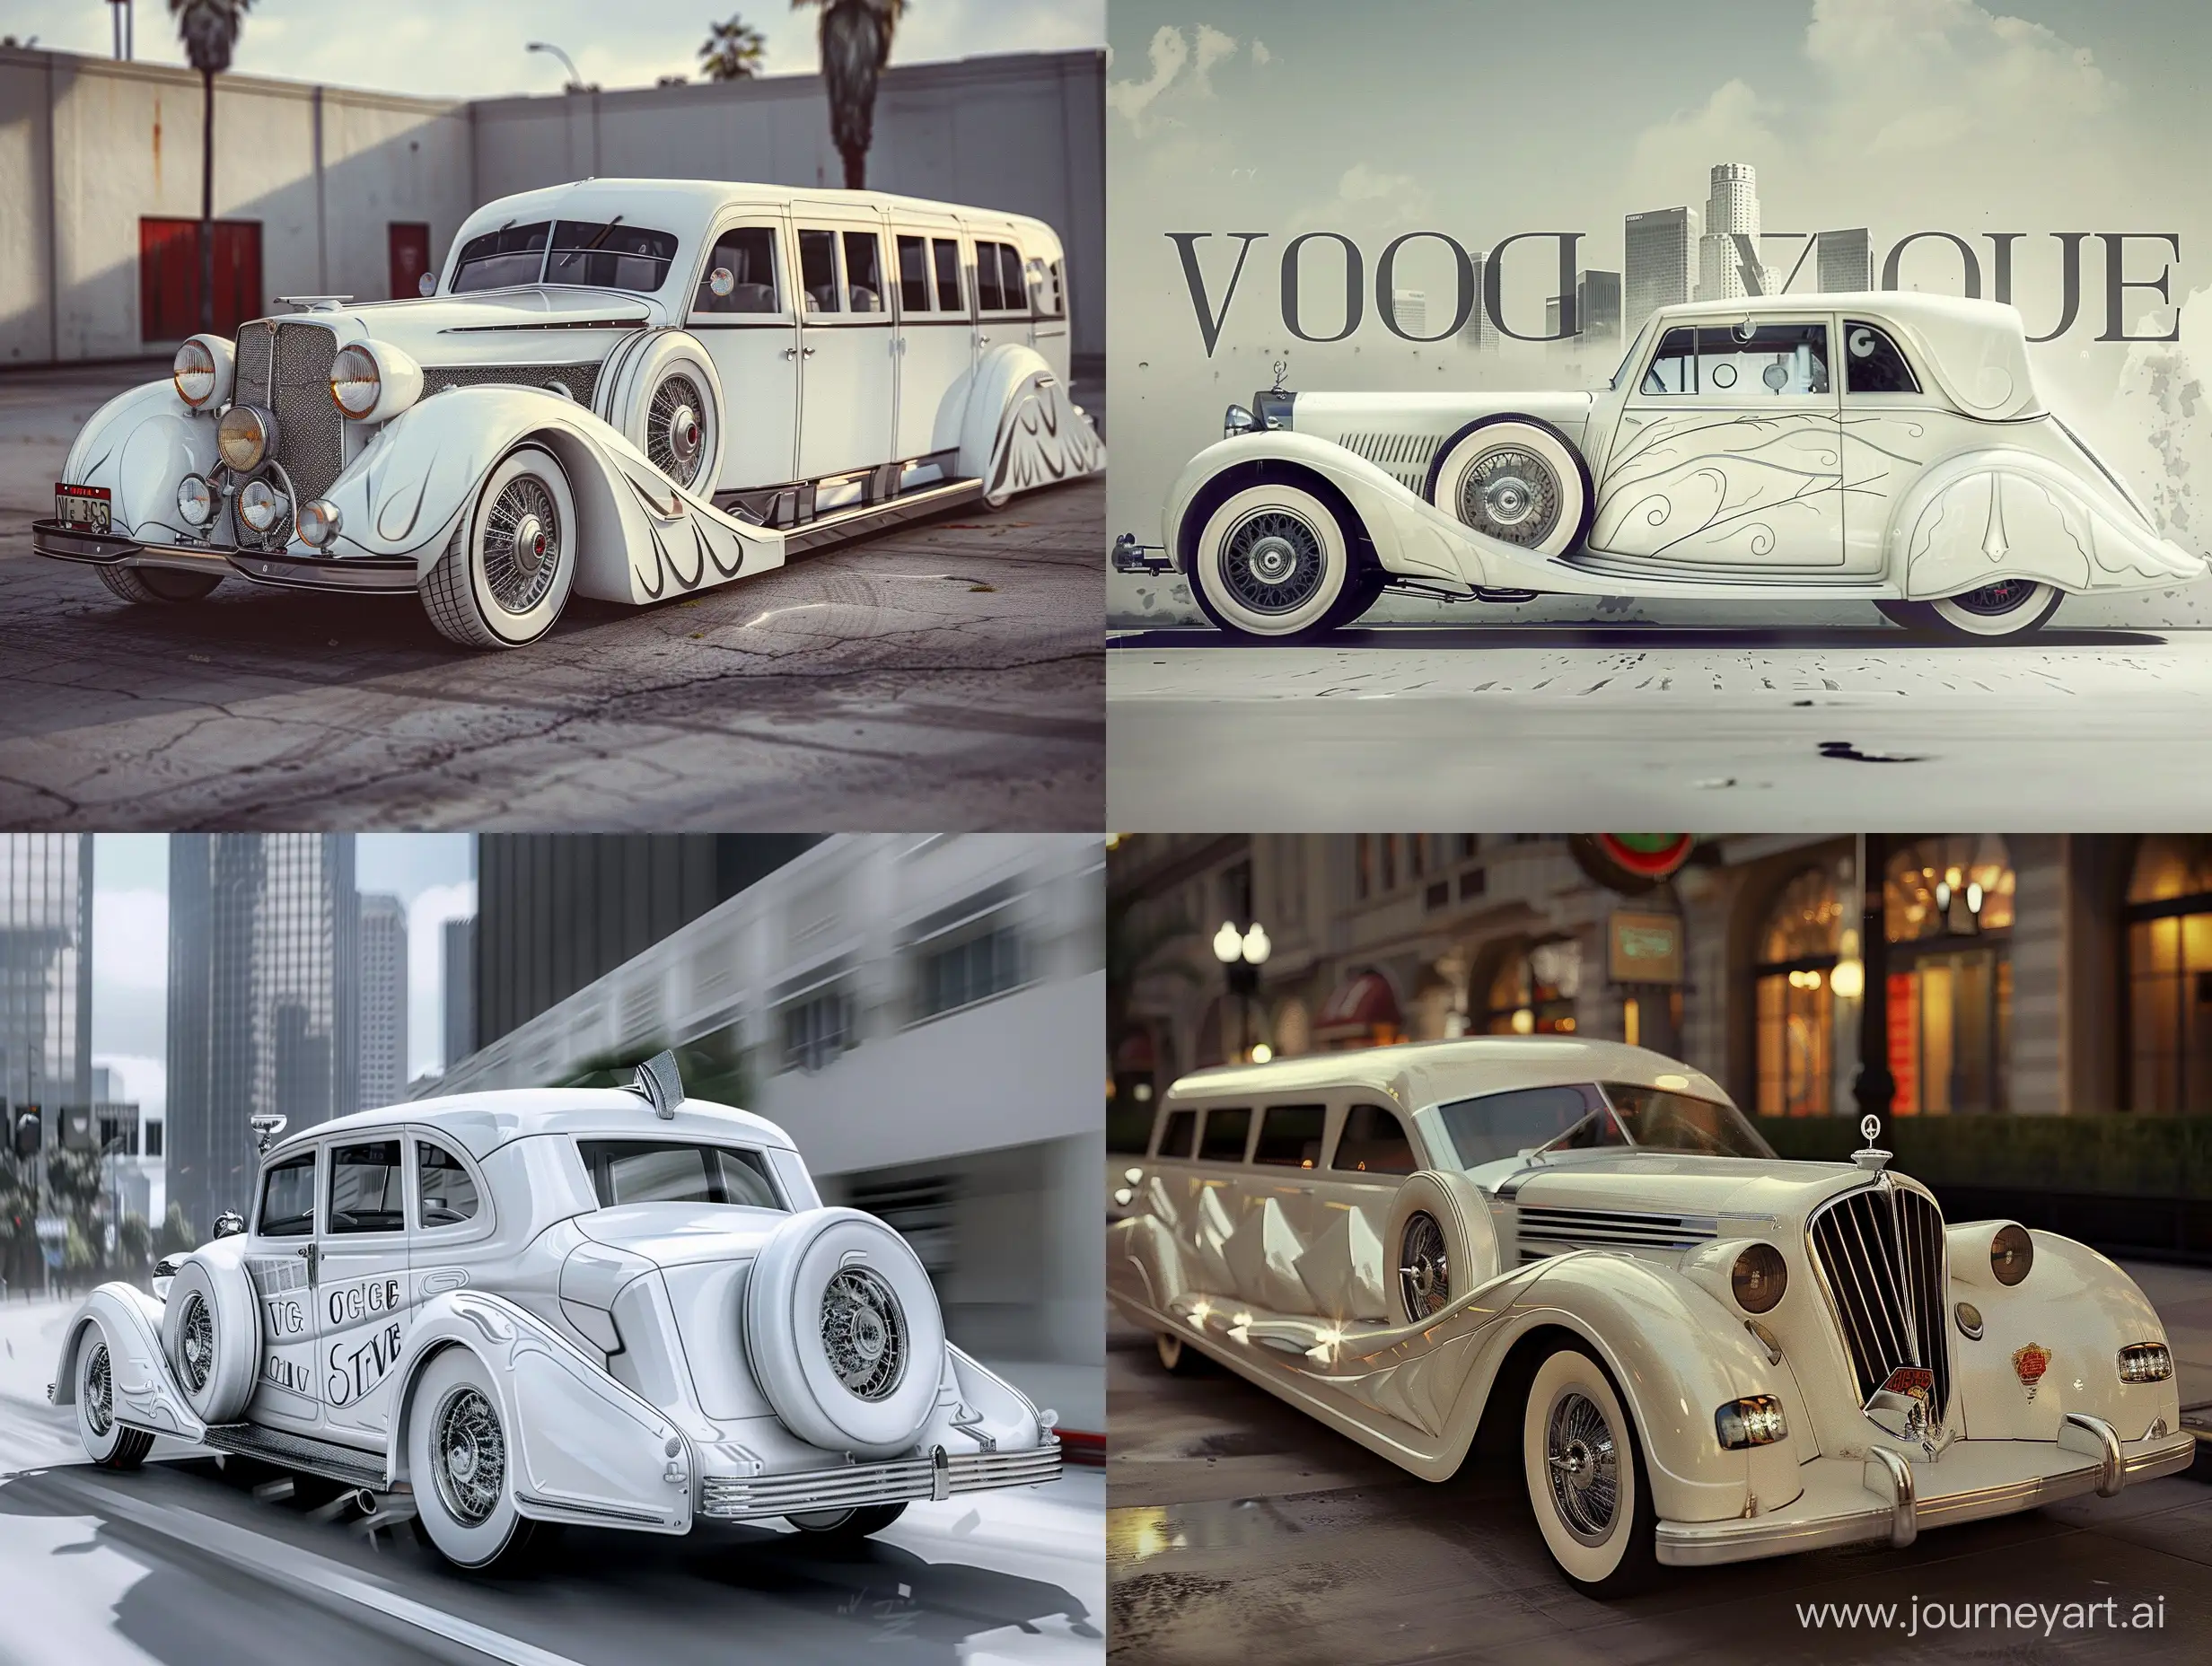 Vintage-Vogue-40s-Car-in-Los-Angeles